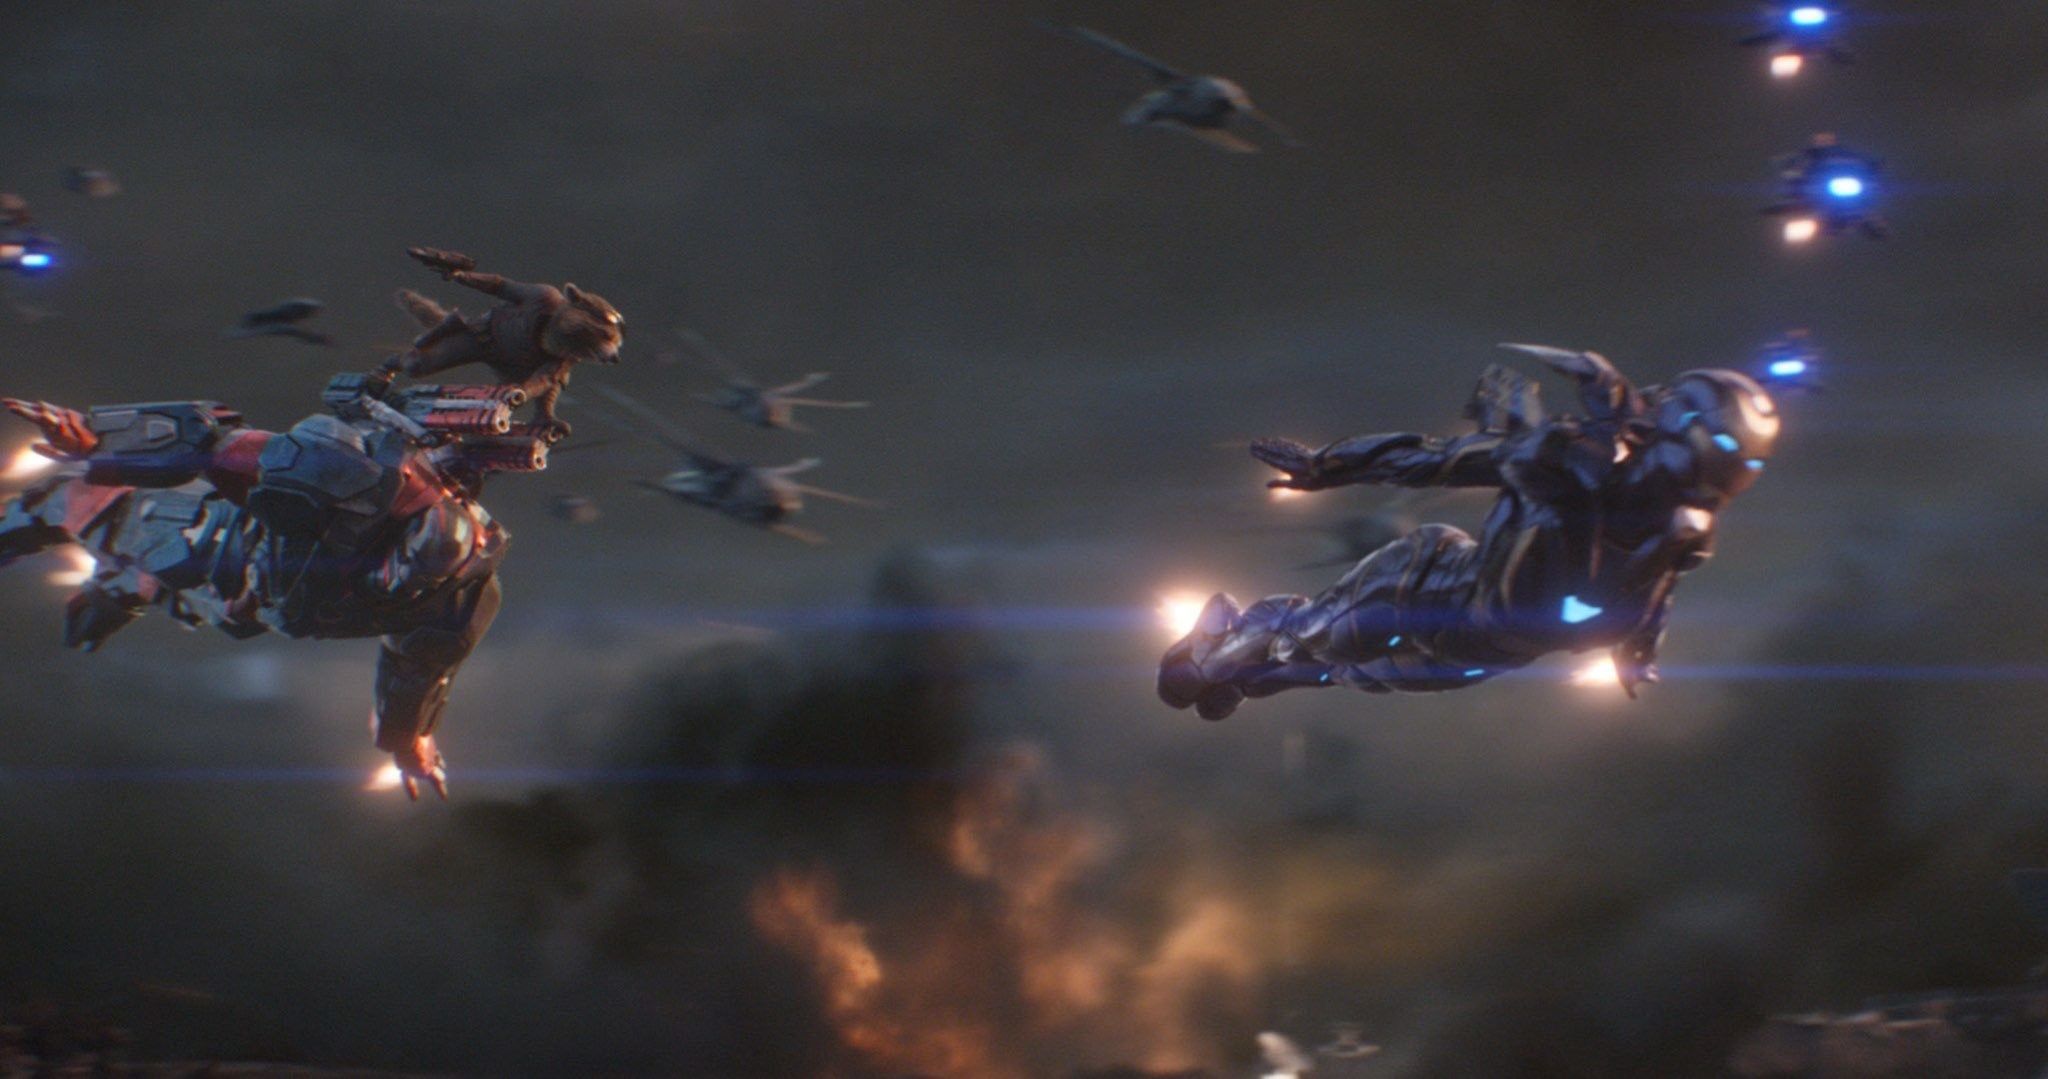 Some Avengers Endgame IMAX stills for your Wallpaper purposes